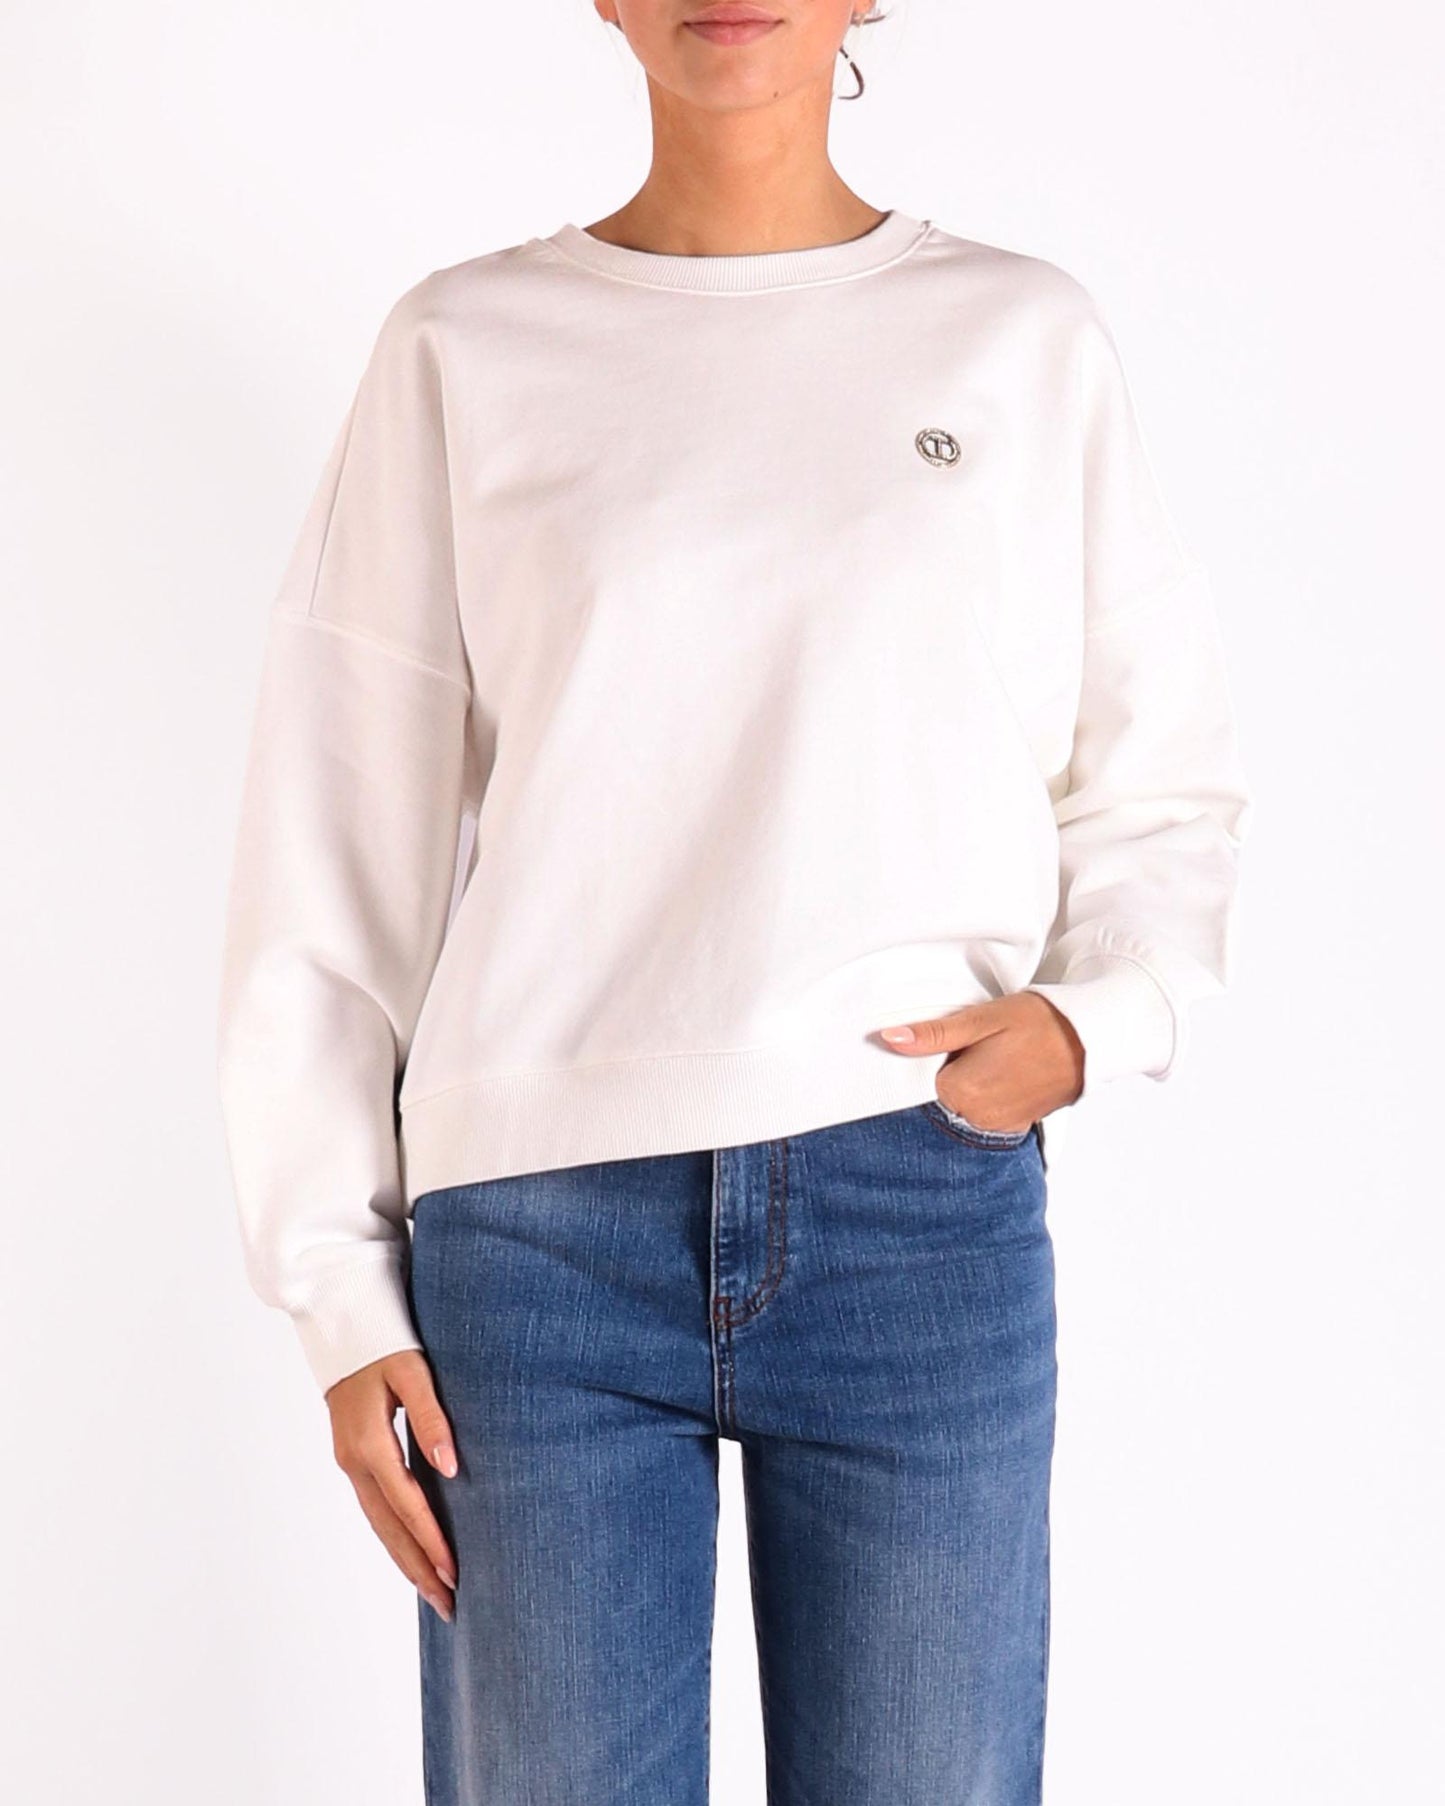 Twinset sweater in de kleur wit